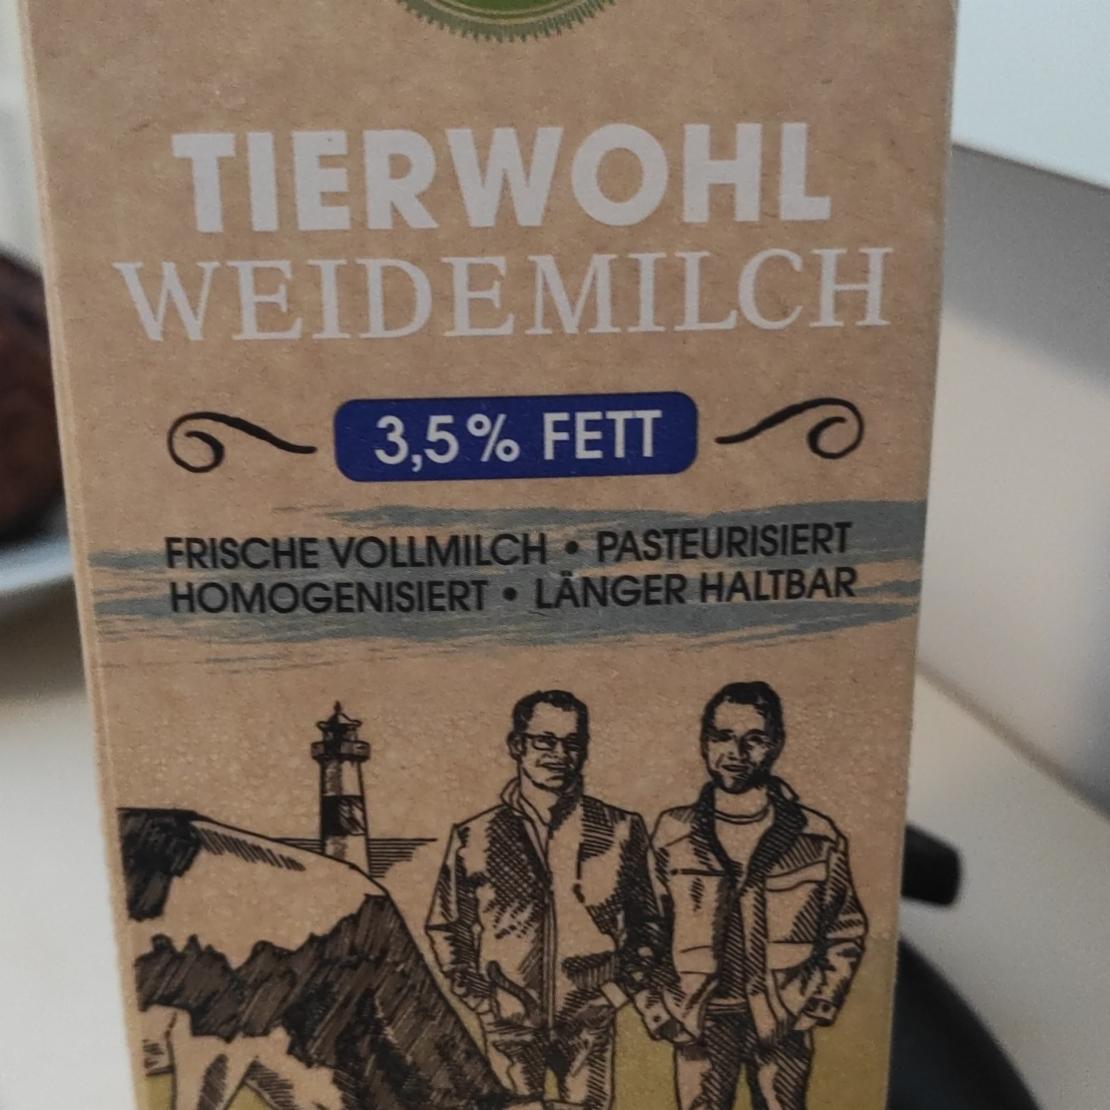 Фото - молоко 3,5% Weidemilch Tierwhol